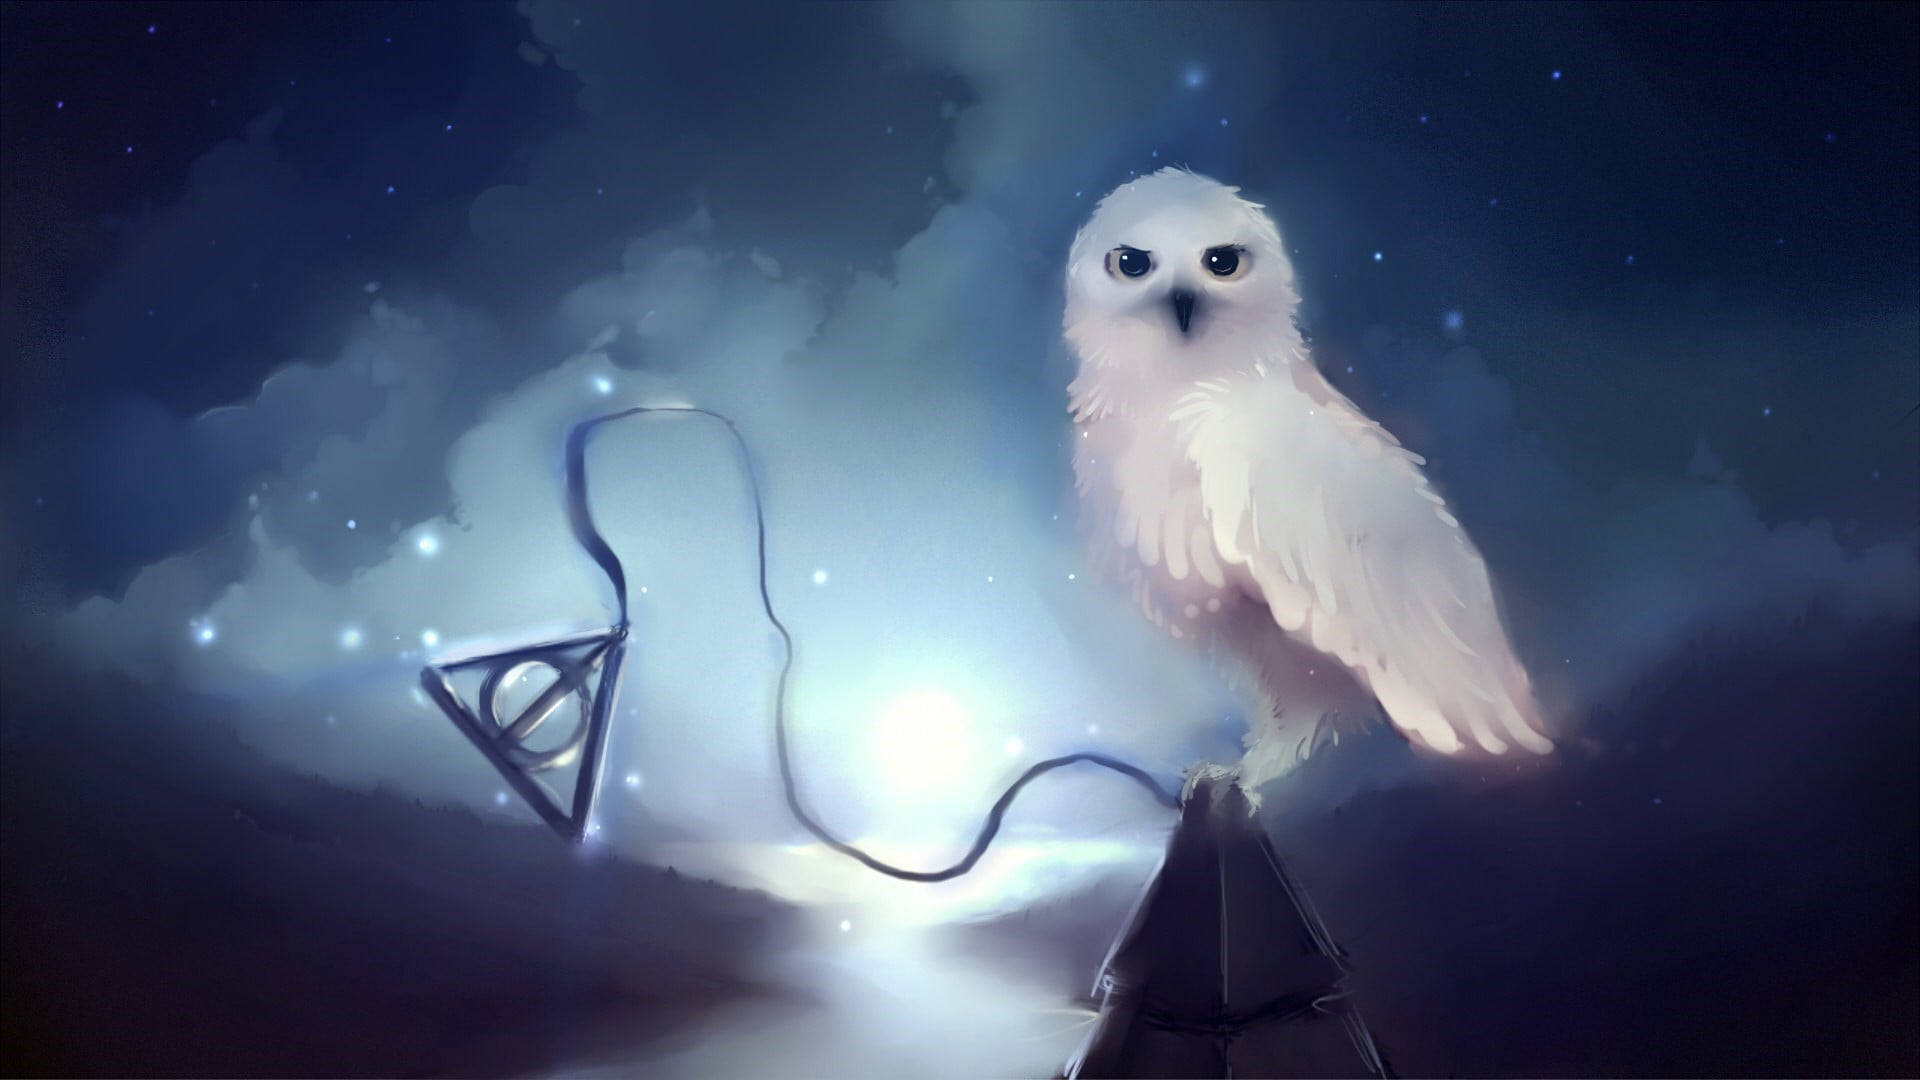 Aesthetic Harry Potter White Owl Wallpaper